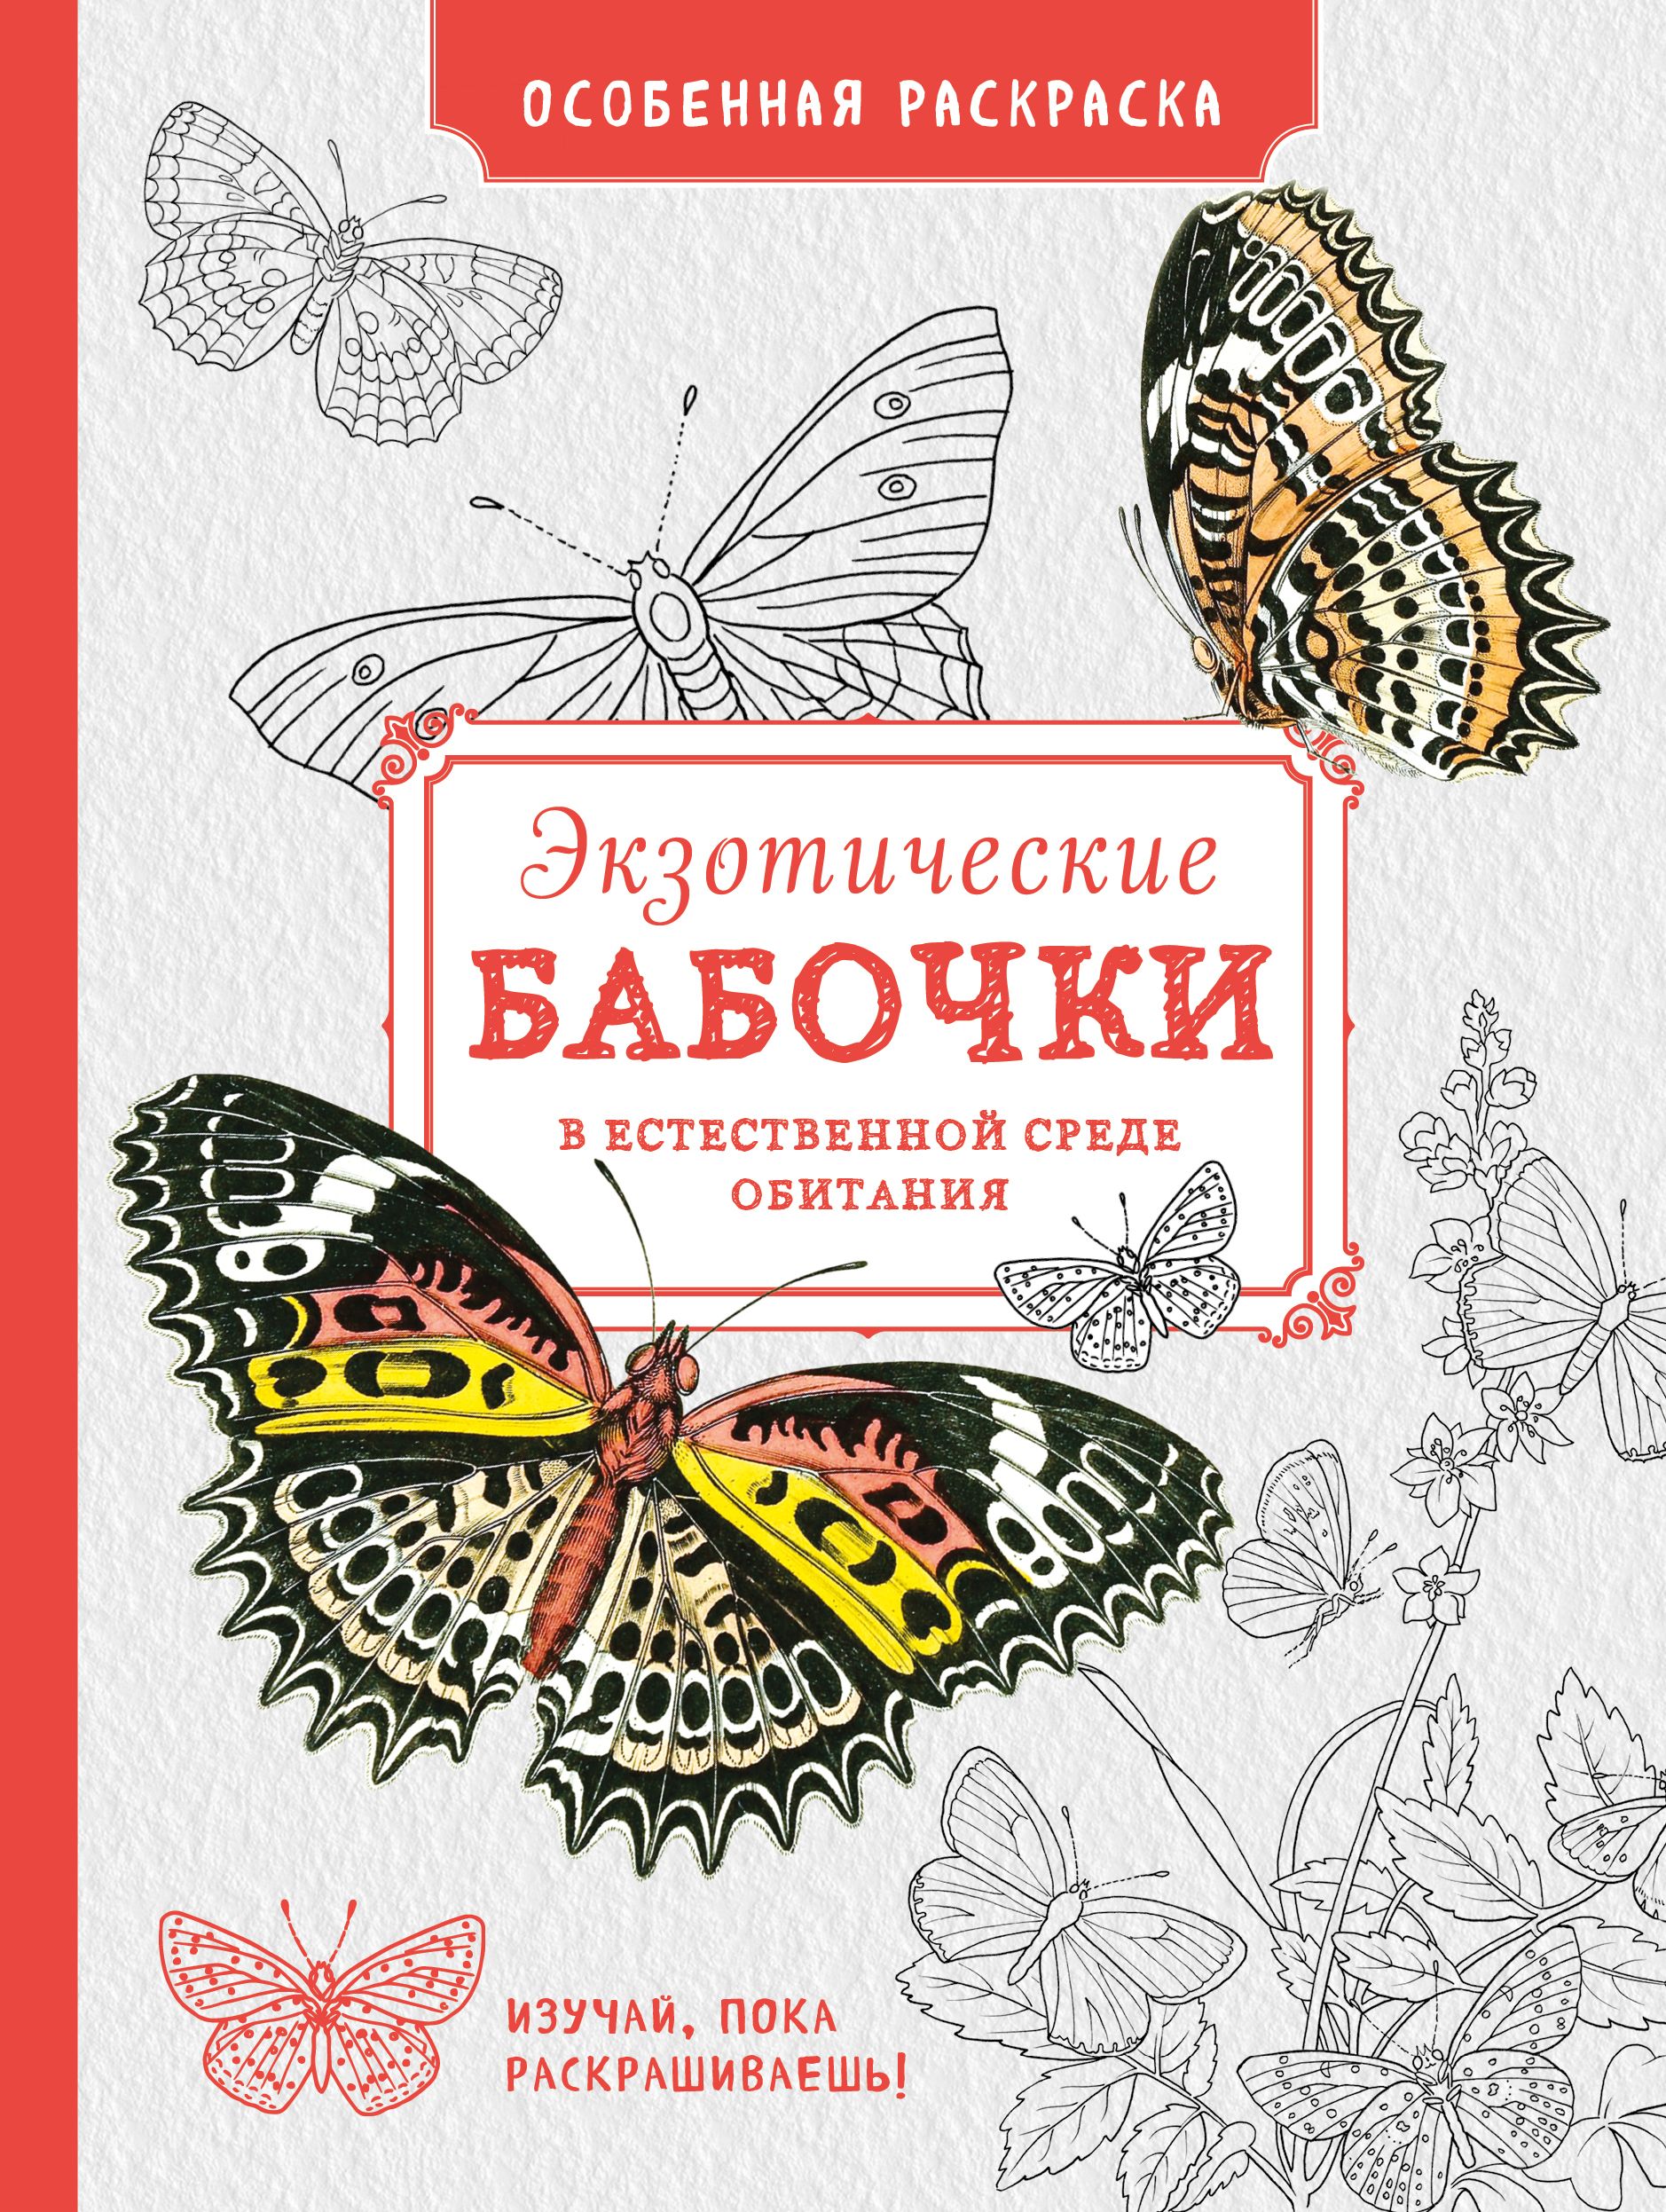 Экзотические книги. Раскраски экзотические бабочки. Особенная раскраска экзотические бабочки. Книга с бабочками. Бабочки в естественной среде.